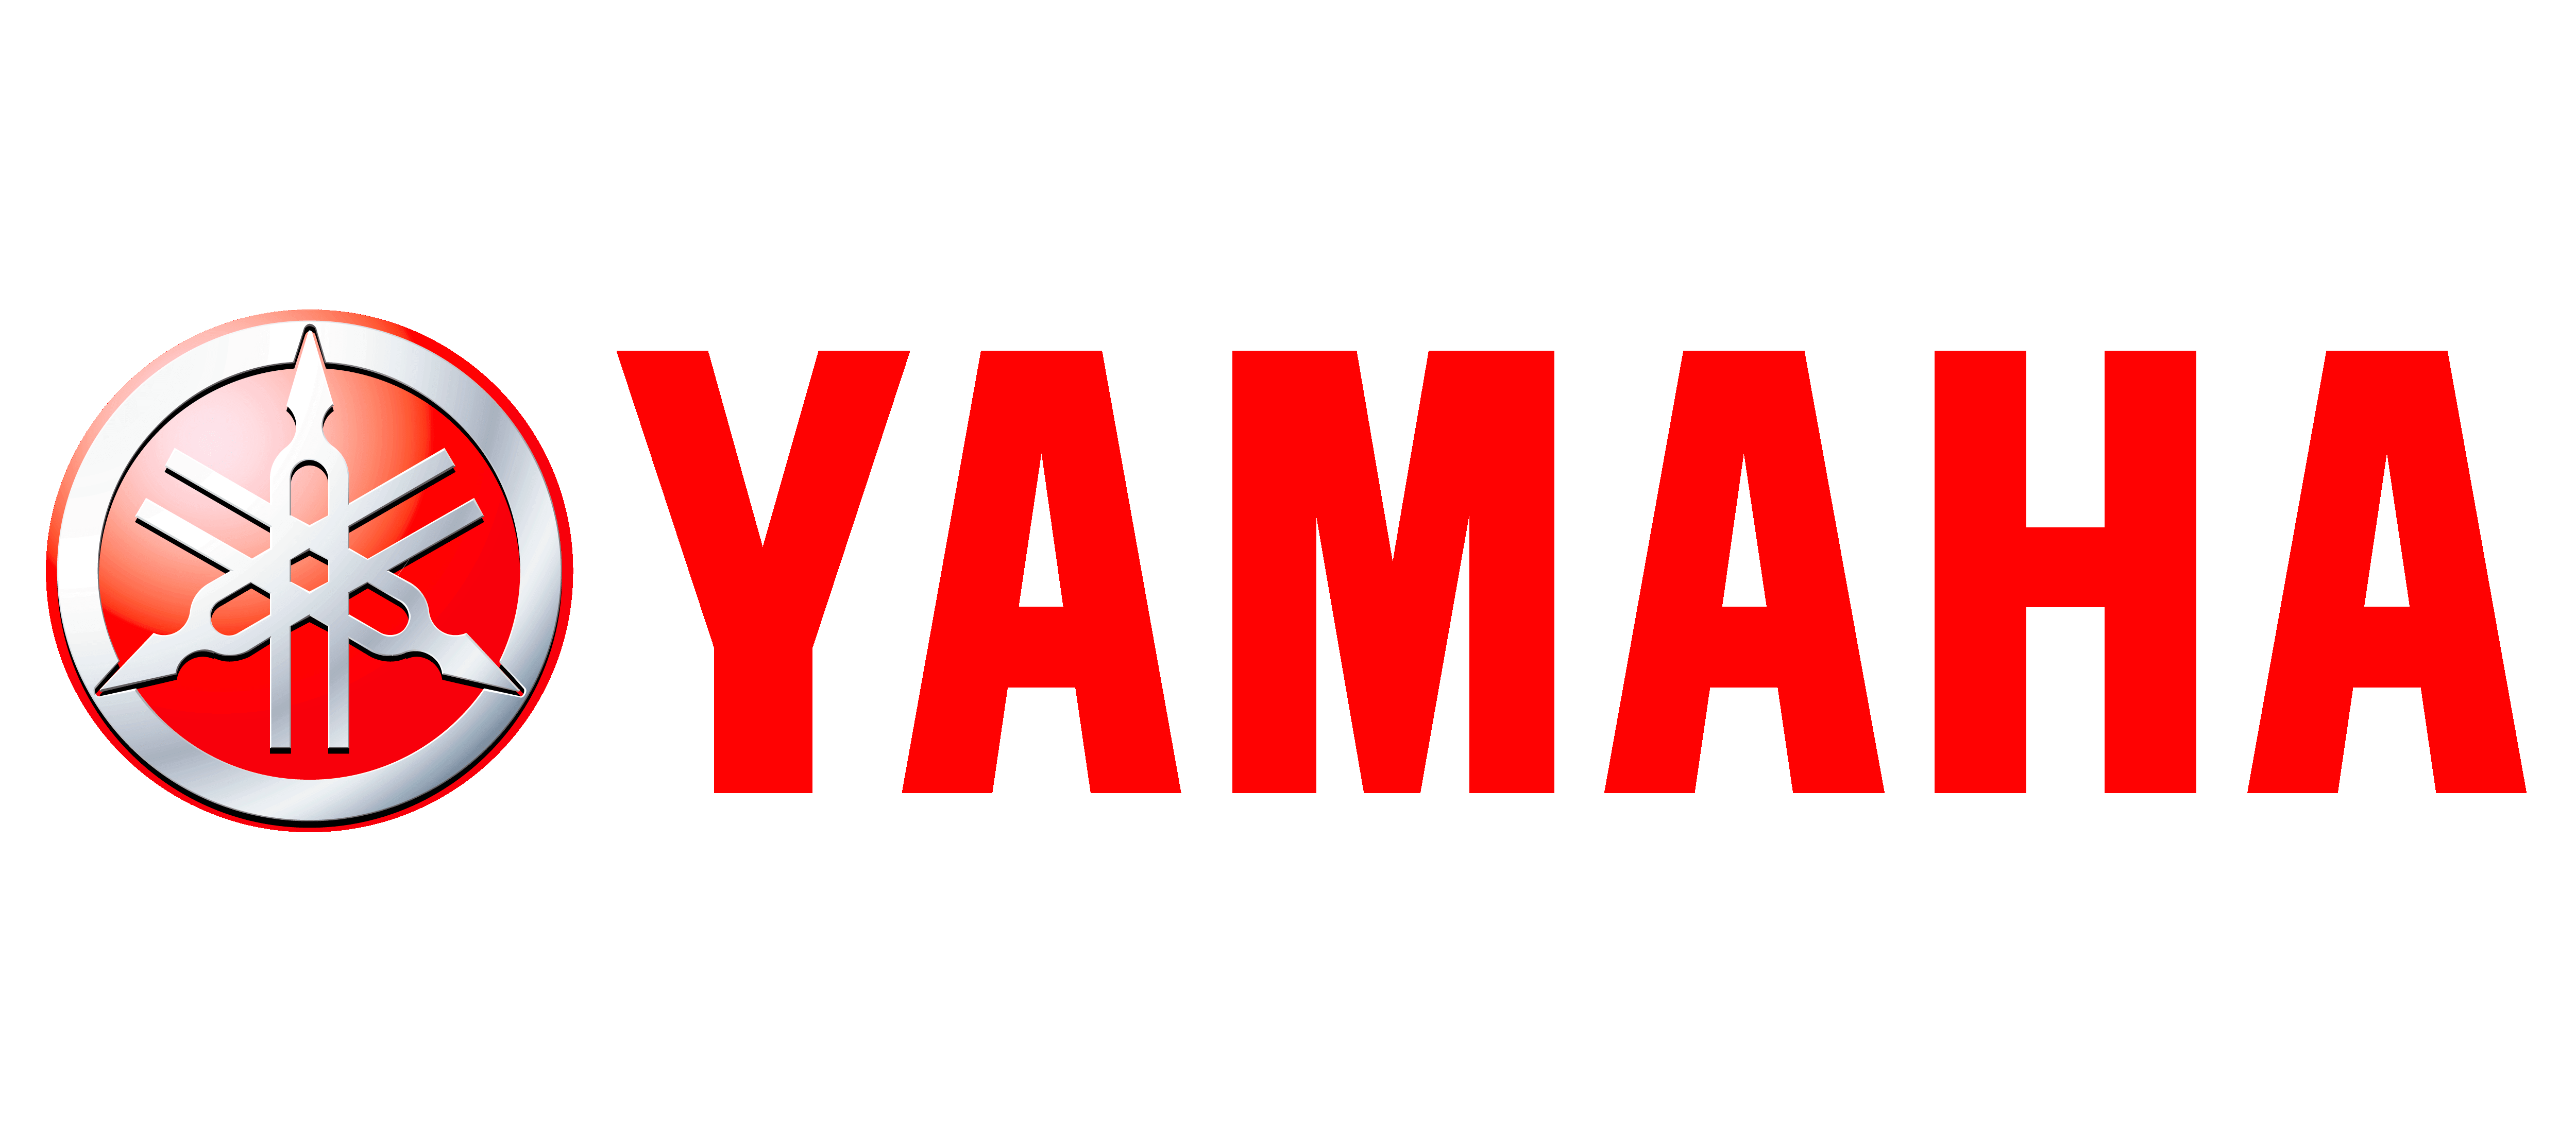 Yamha